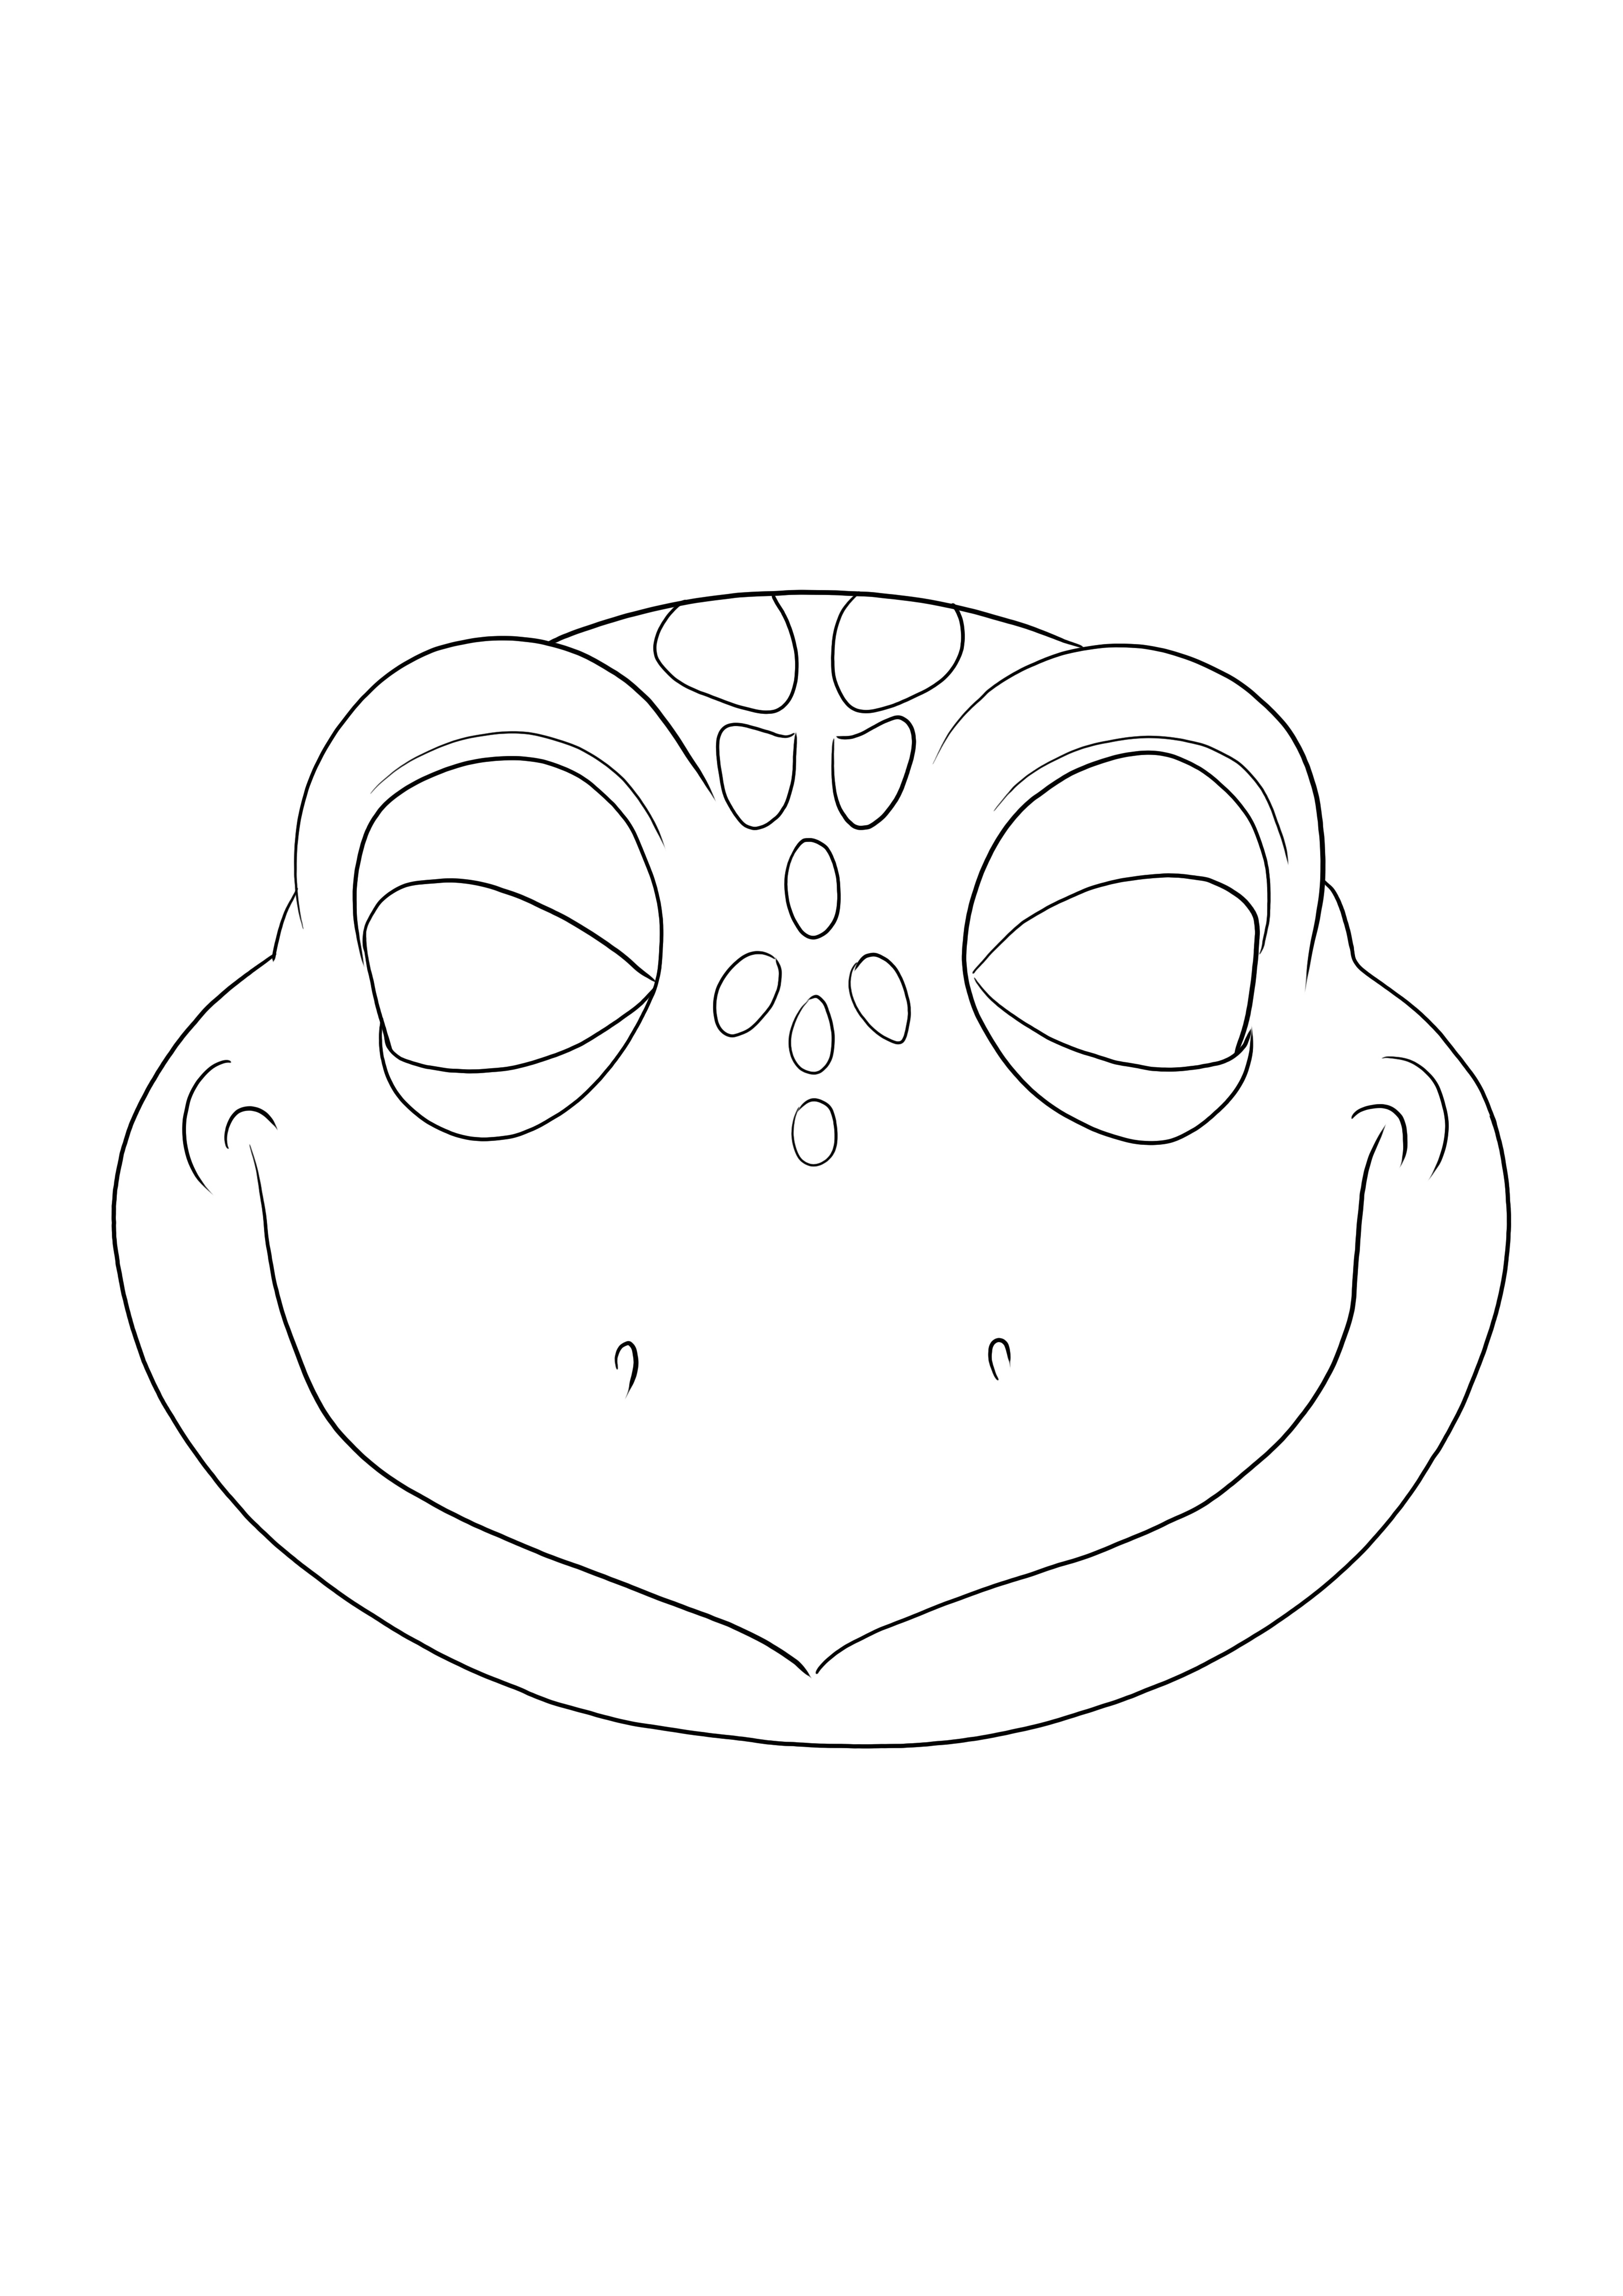 Folha para colorir de uma Máscara de Tartaruga para imprimir ou baixar grátis